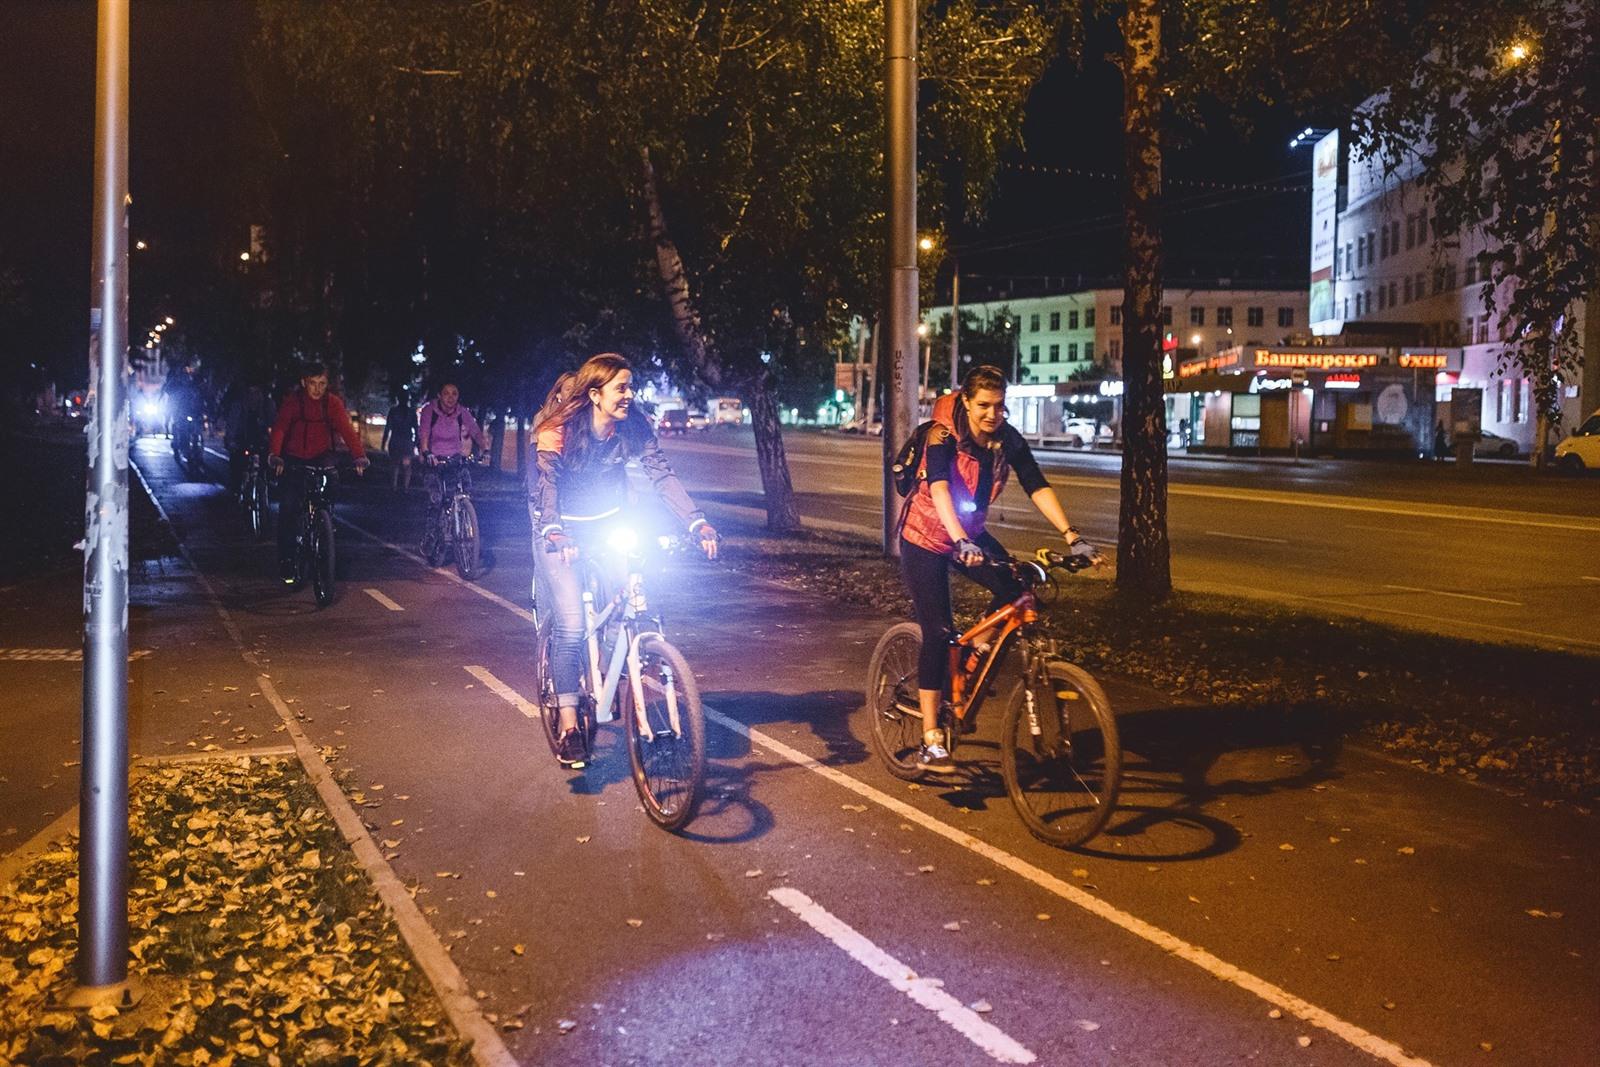 cache spreken verdund Beste fietsverlichting kopen 2023: wat is het beste fietslicht?